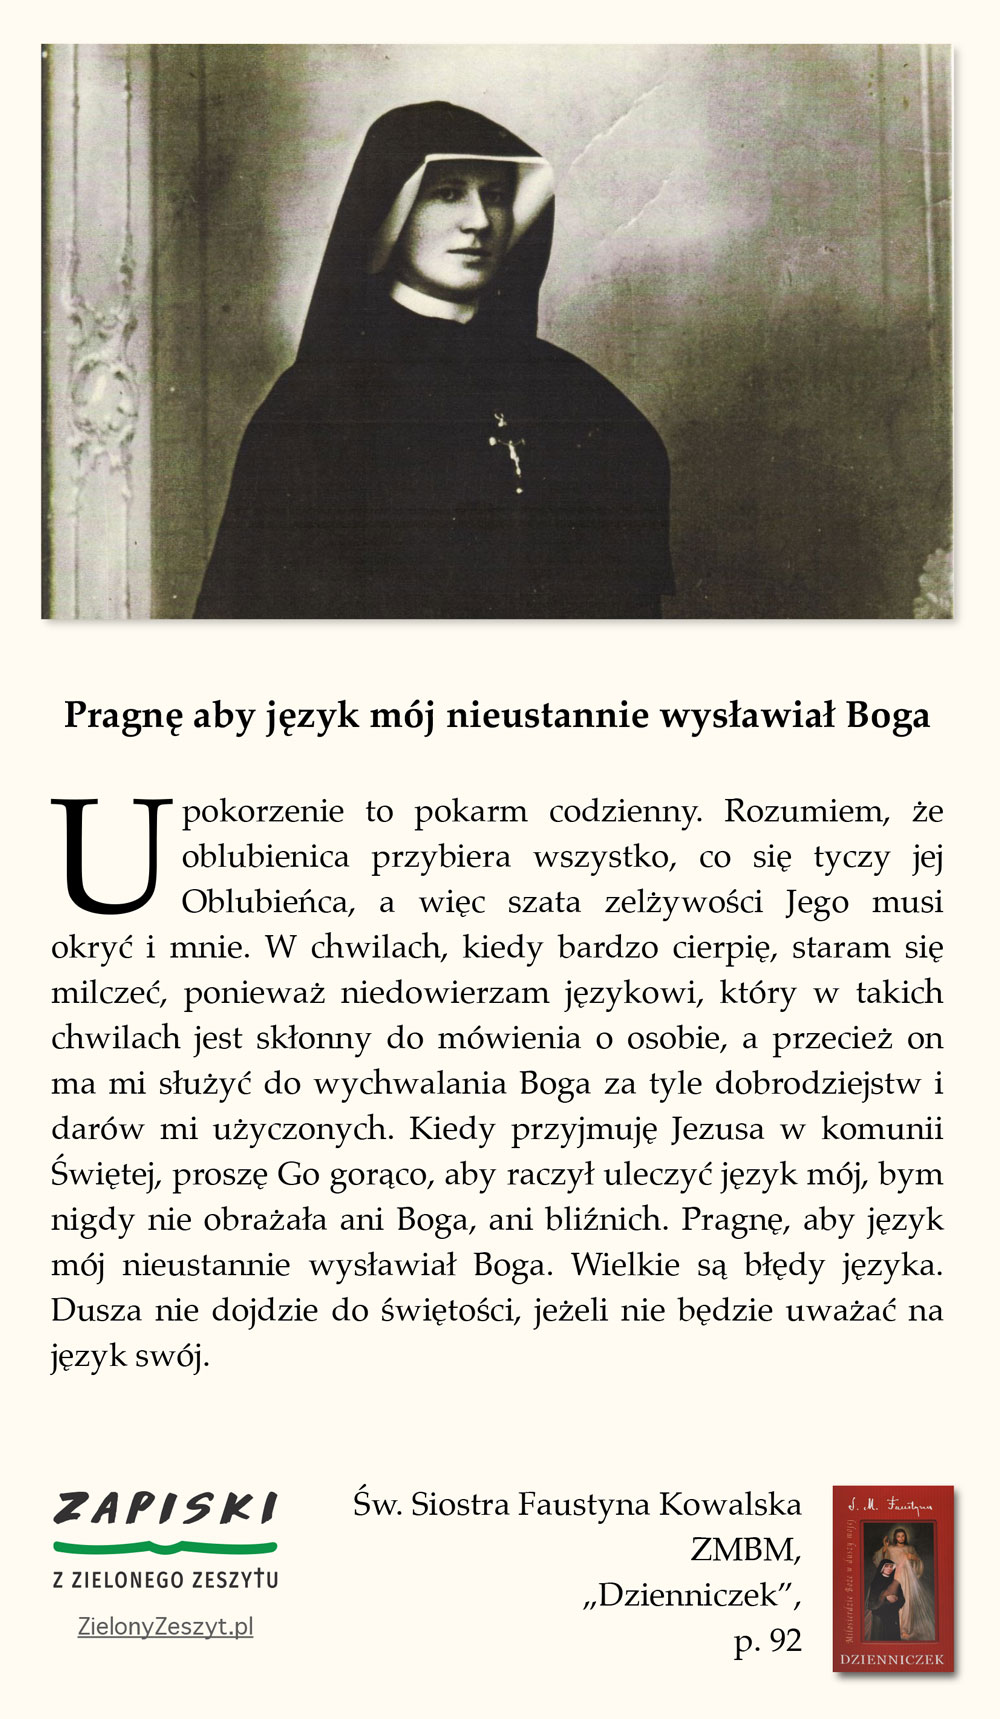 Św. Siostra Faustyna Kowalska ZMBM, "Dzienniczek", p. 92 (Pragnę aby język mój nieustannie wysławiał Boga)